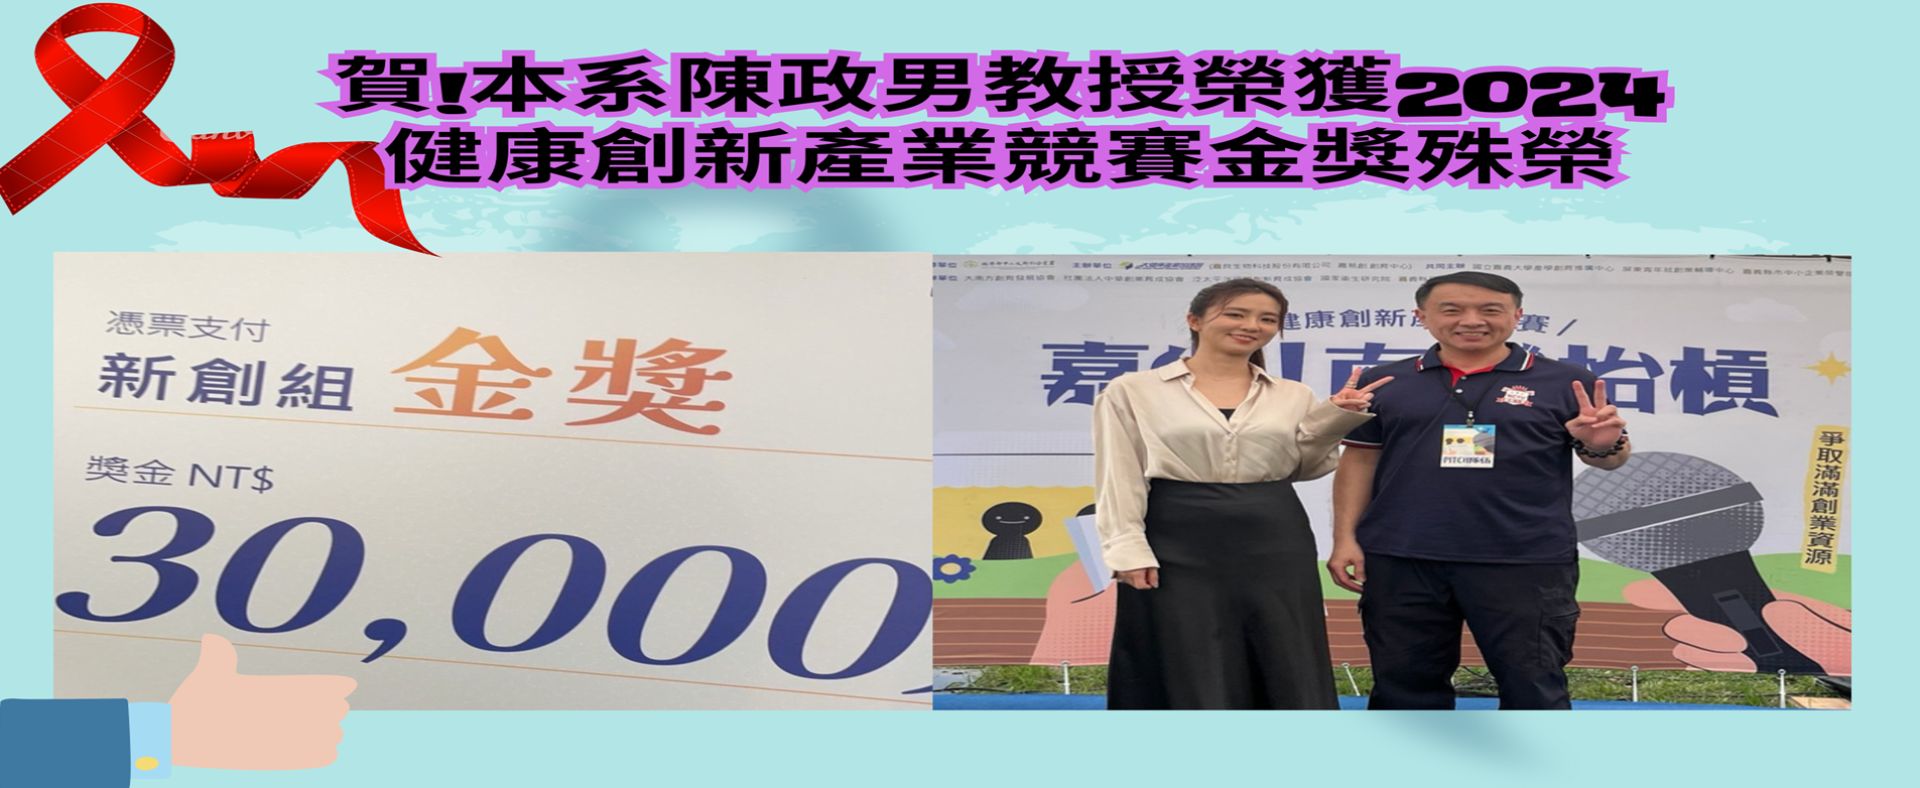 本系陳政男教授榮獲2024健康創新產業競賽金獎殊榮